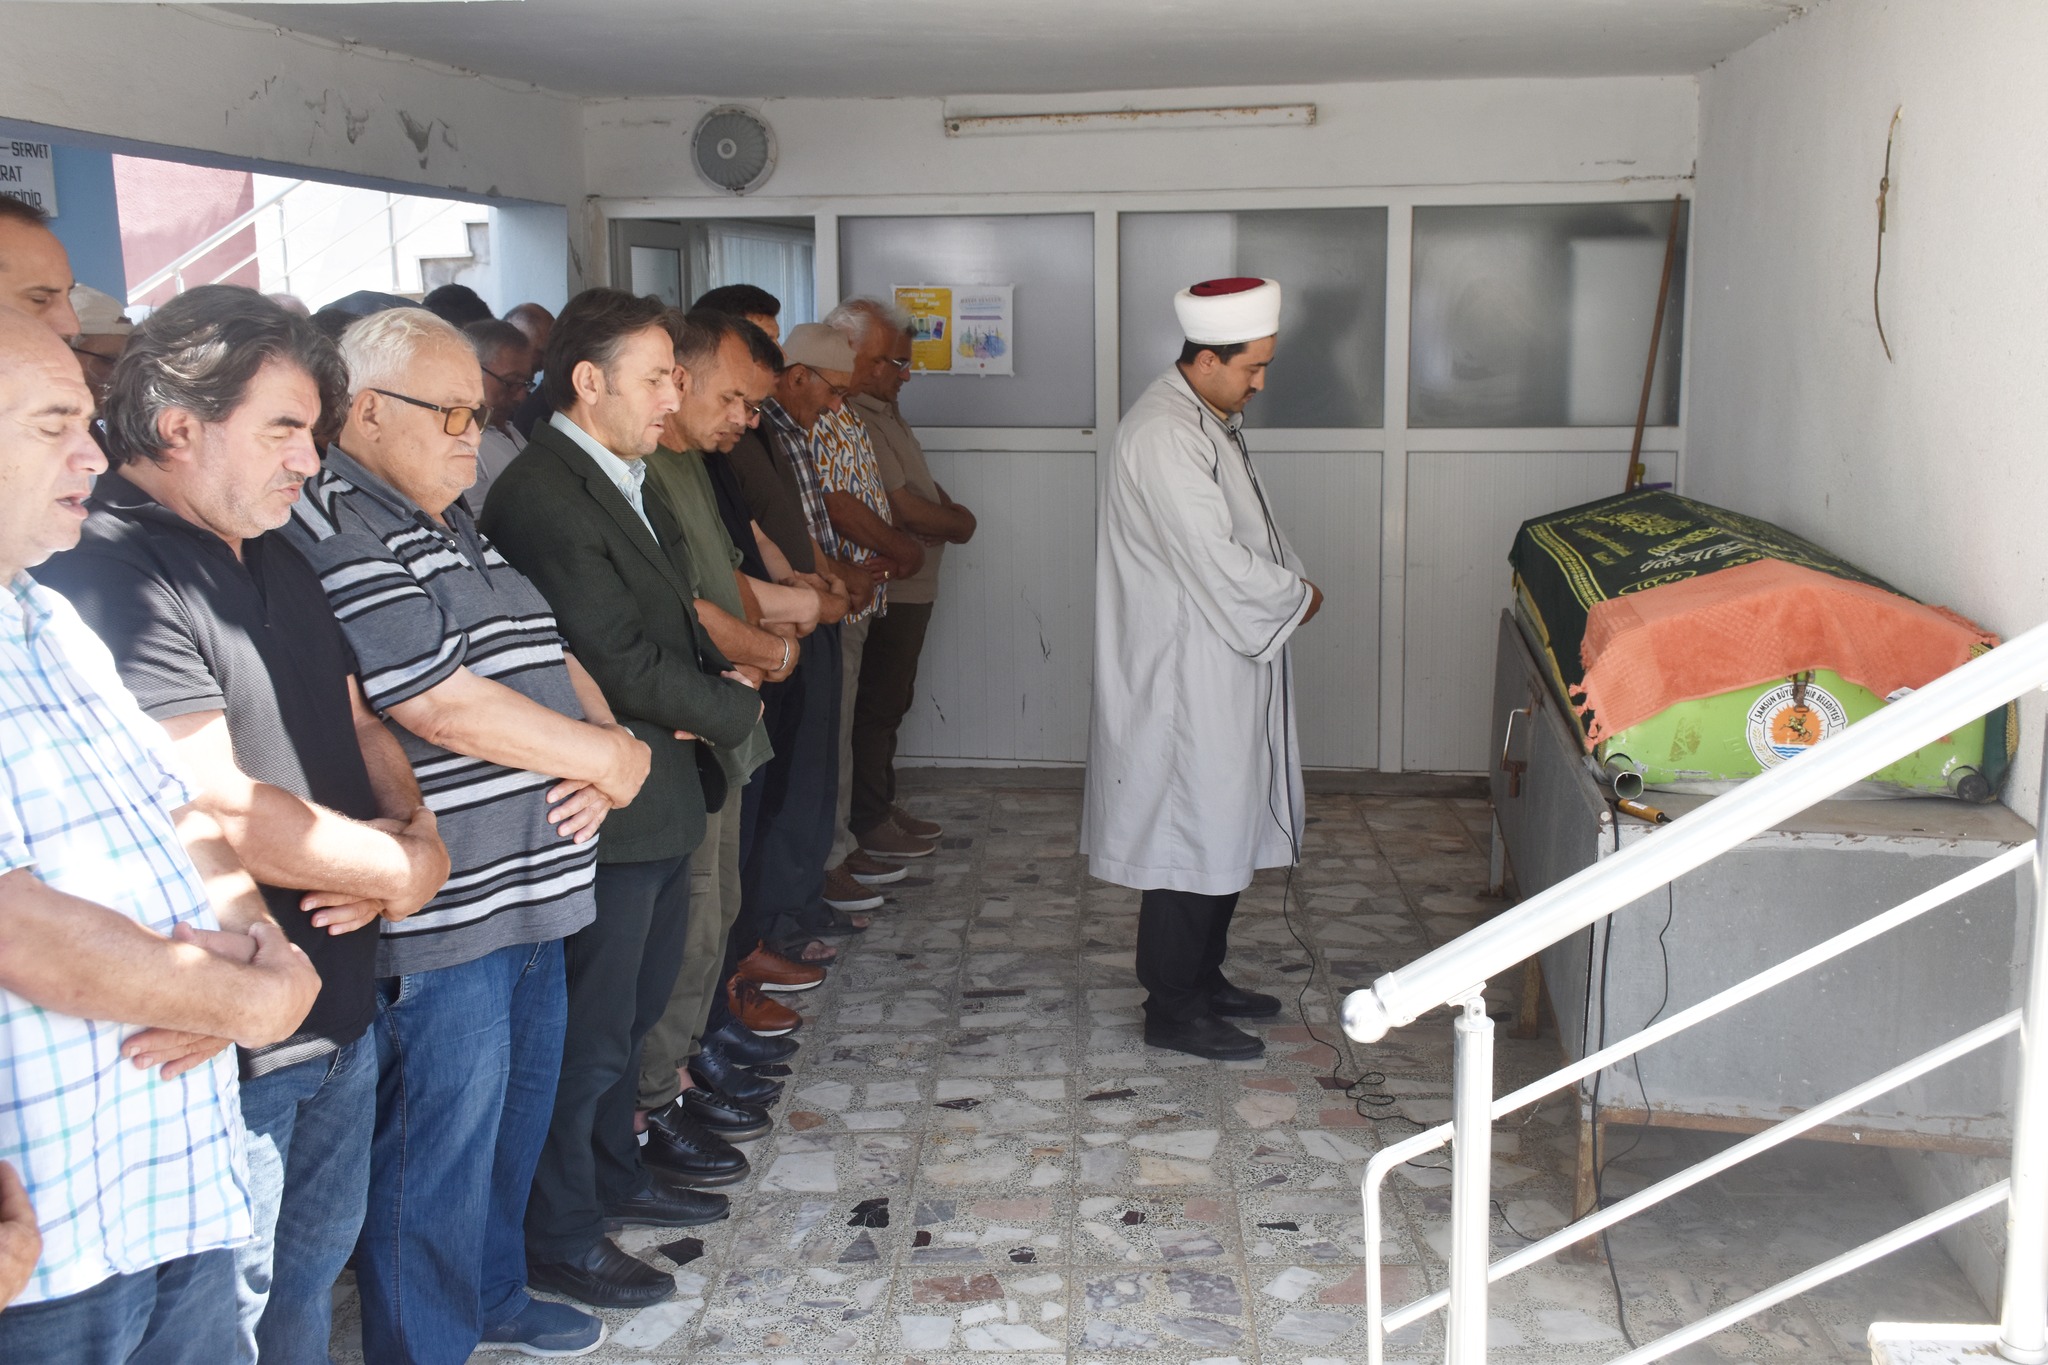 Belediye Başkanımız Hüseyin Kıyma, ilçemiz halkından vefat eden  Lütfi Durhat’ın cenaze namazına katılarak, ailesine ve yakınlarına başsağlığında bulundu.